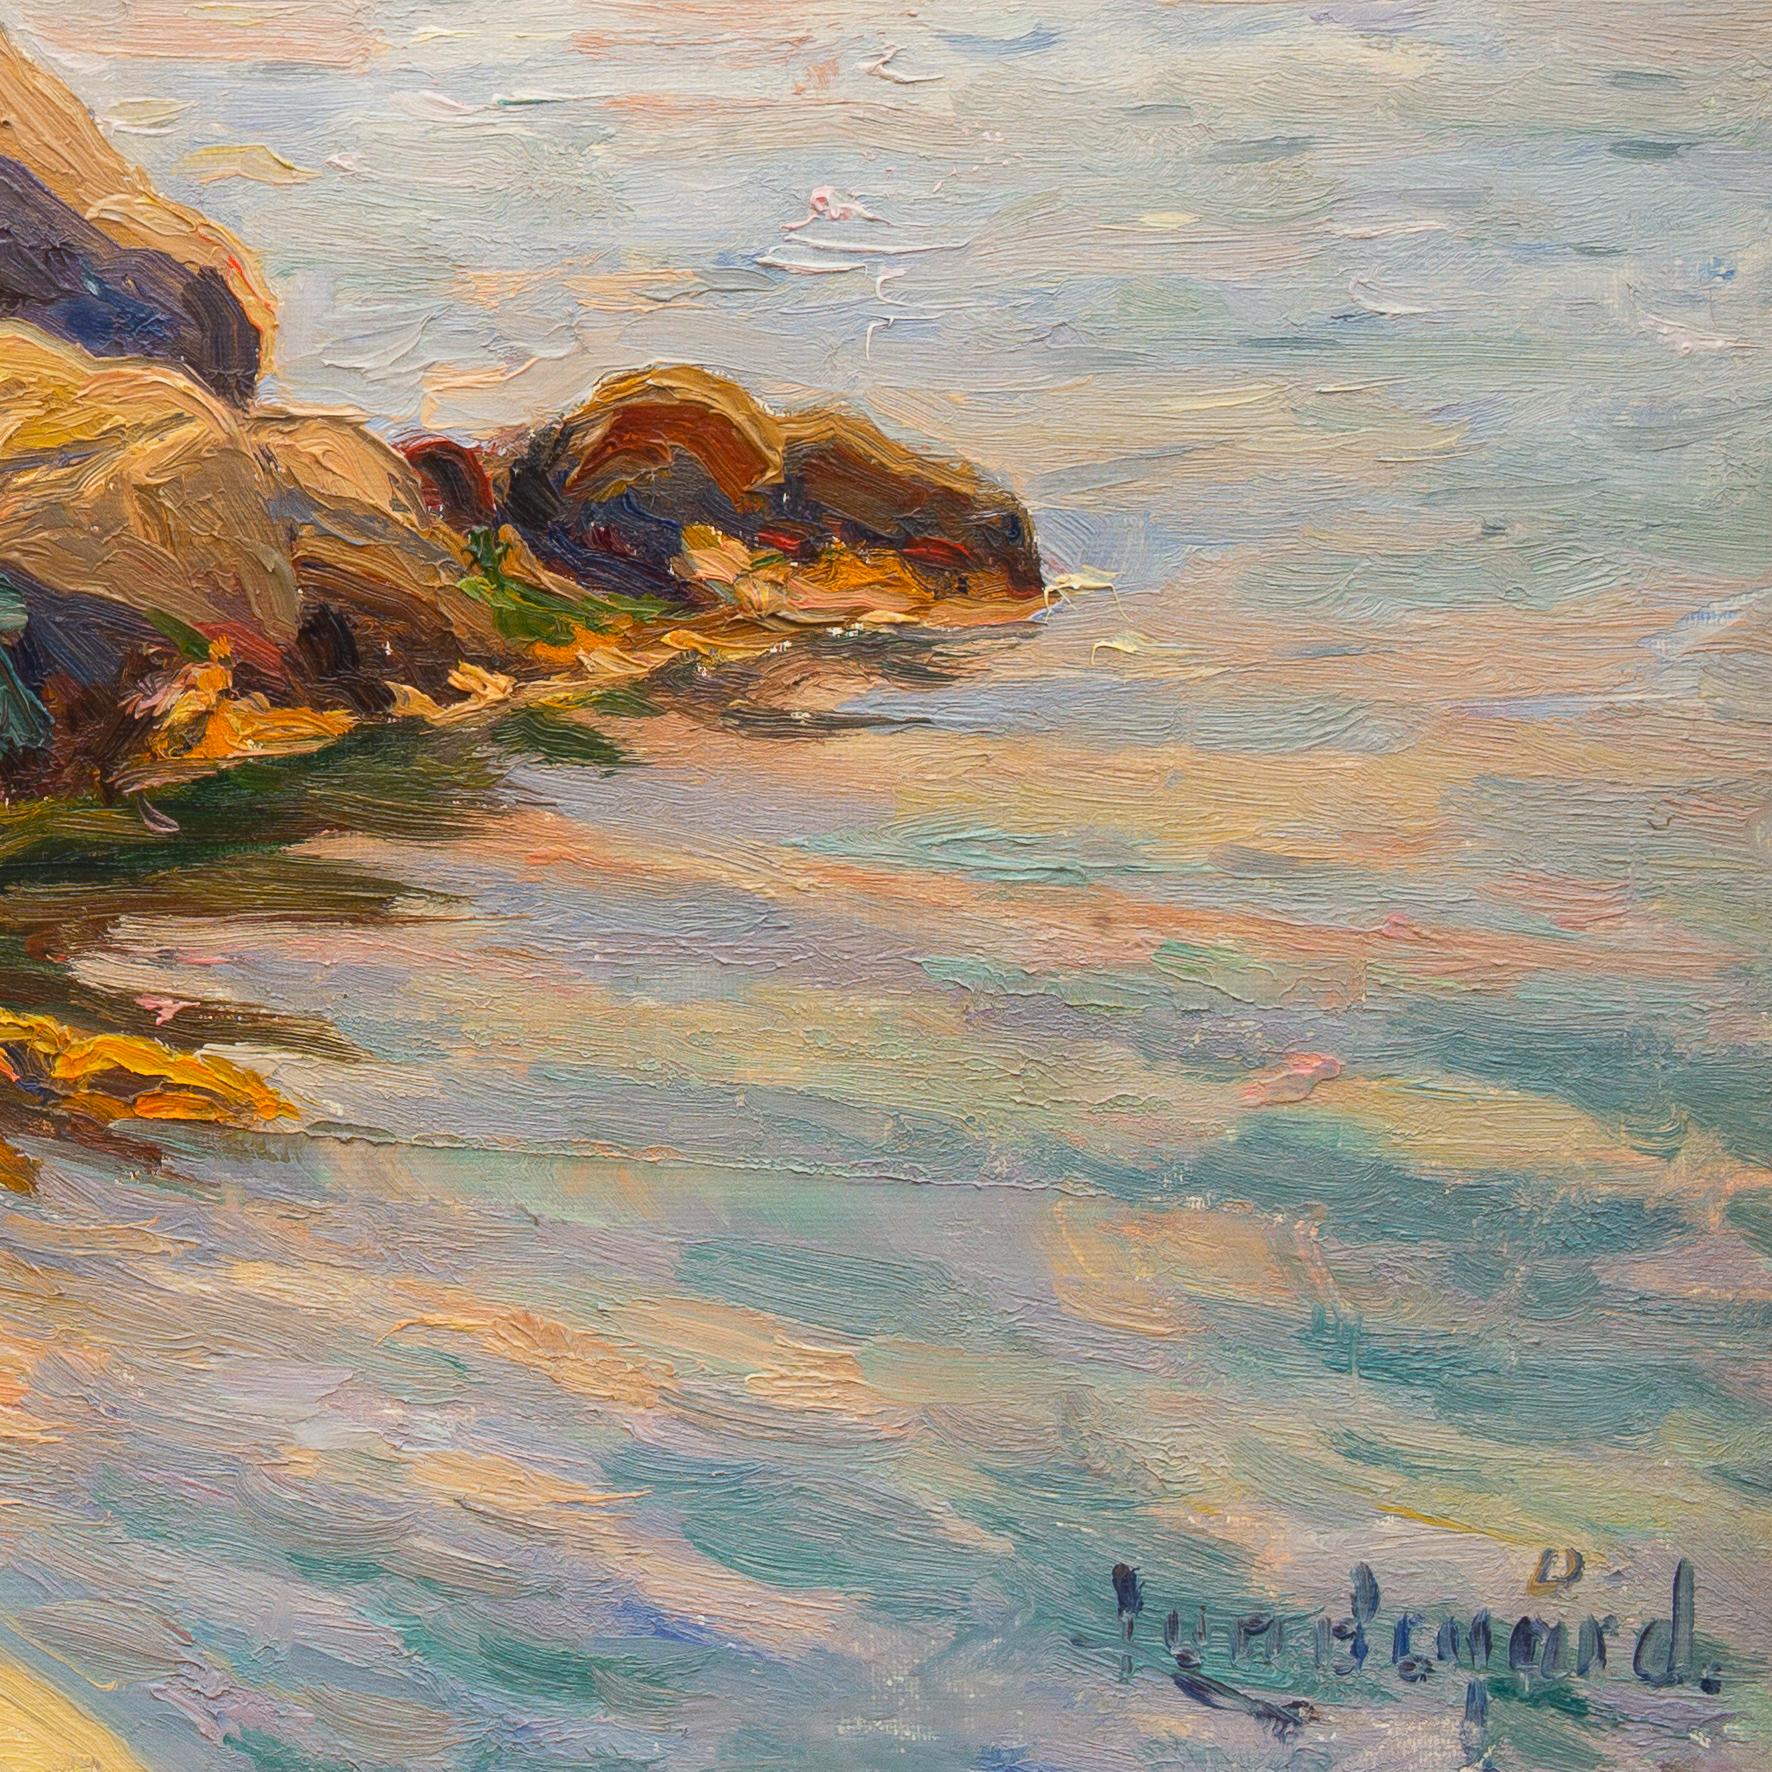 Segelboote im schwedischen Archipelago-Gemälde von Justus Lundegrd, Öl auf Leinwand (Beige), Landscape Painting, von Justus Lundegård